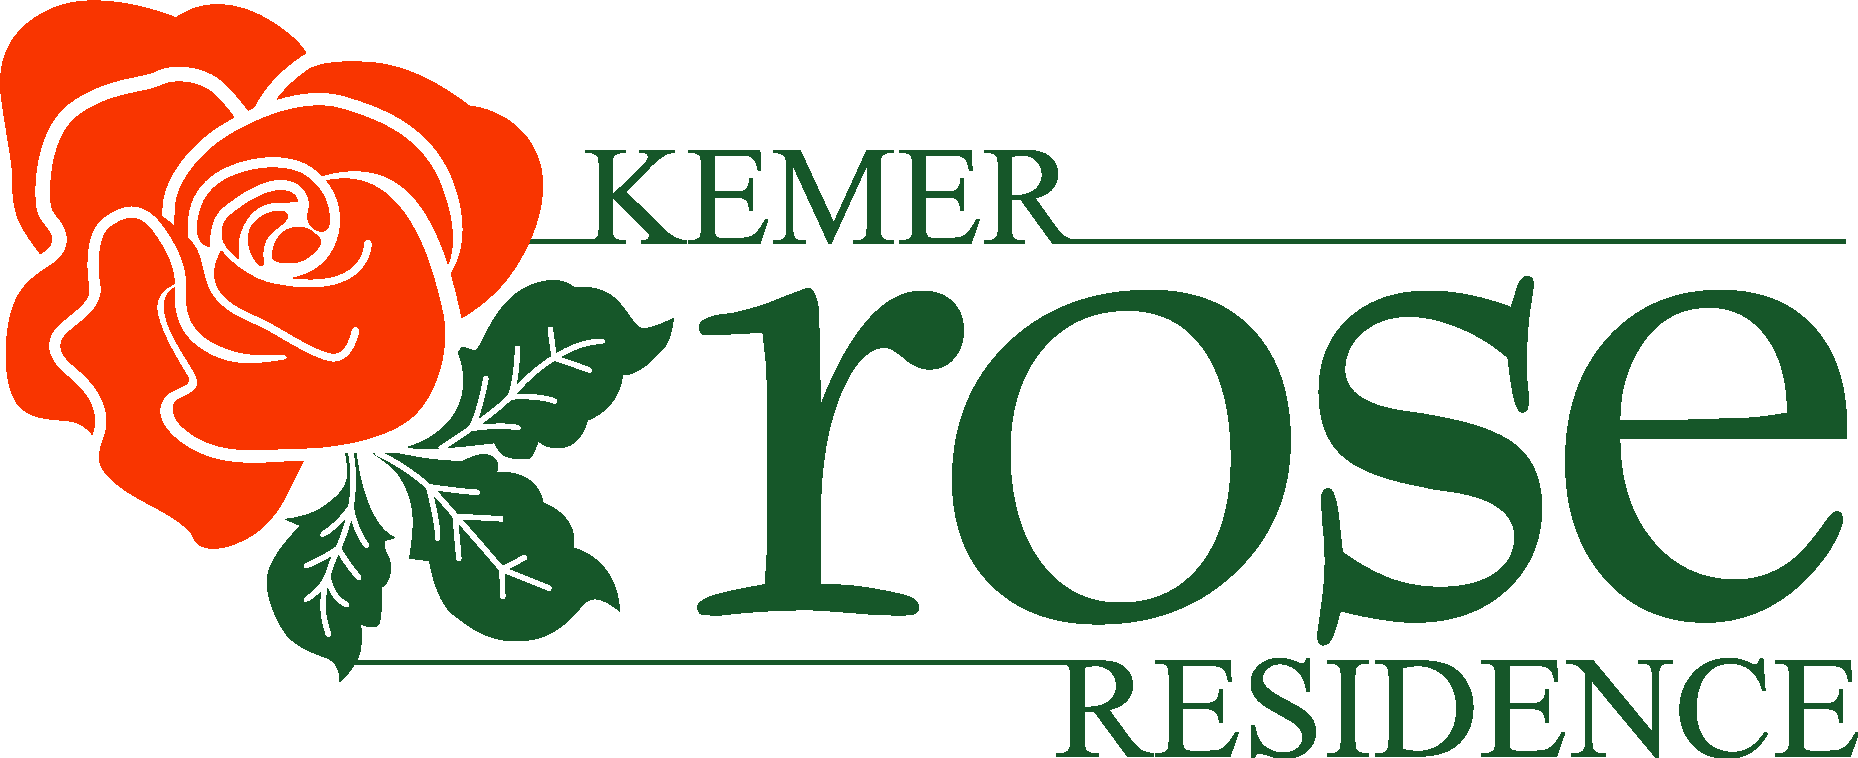 Kemer Rose Residence Logo Vector